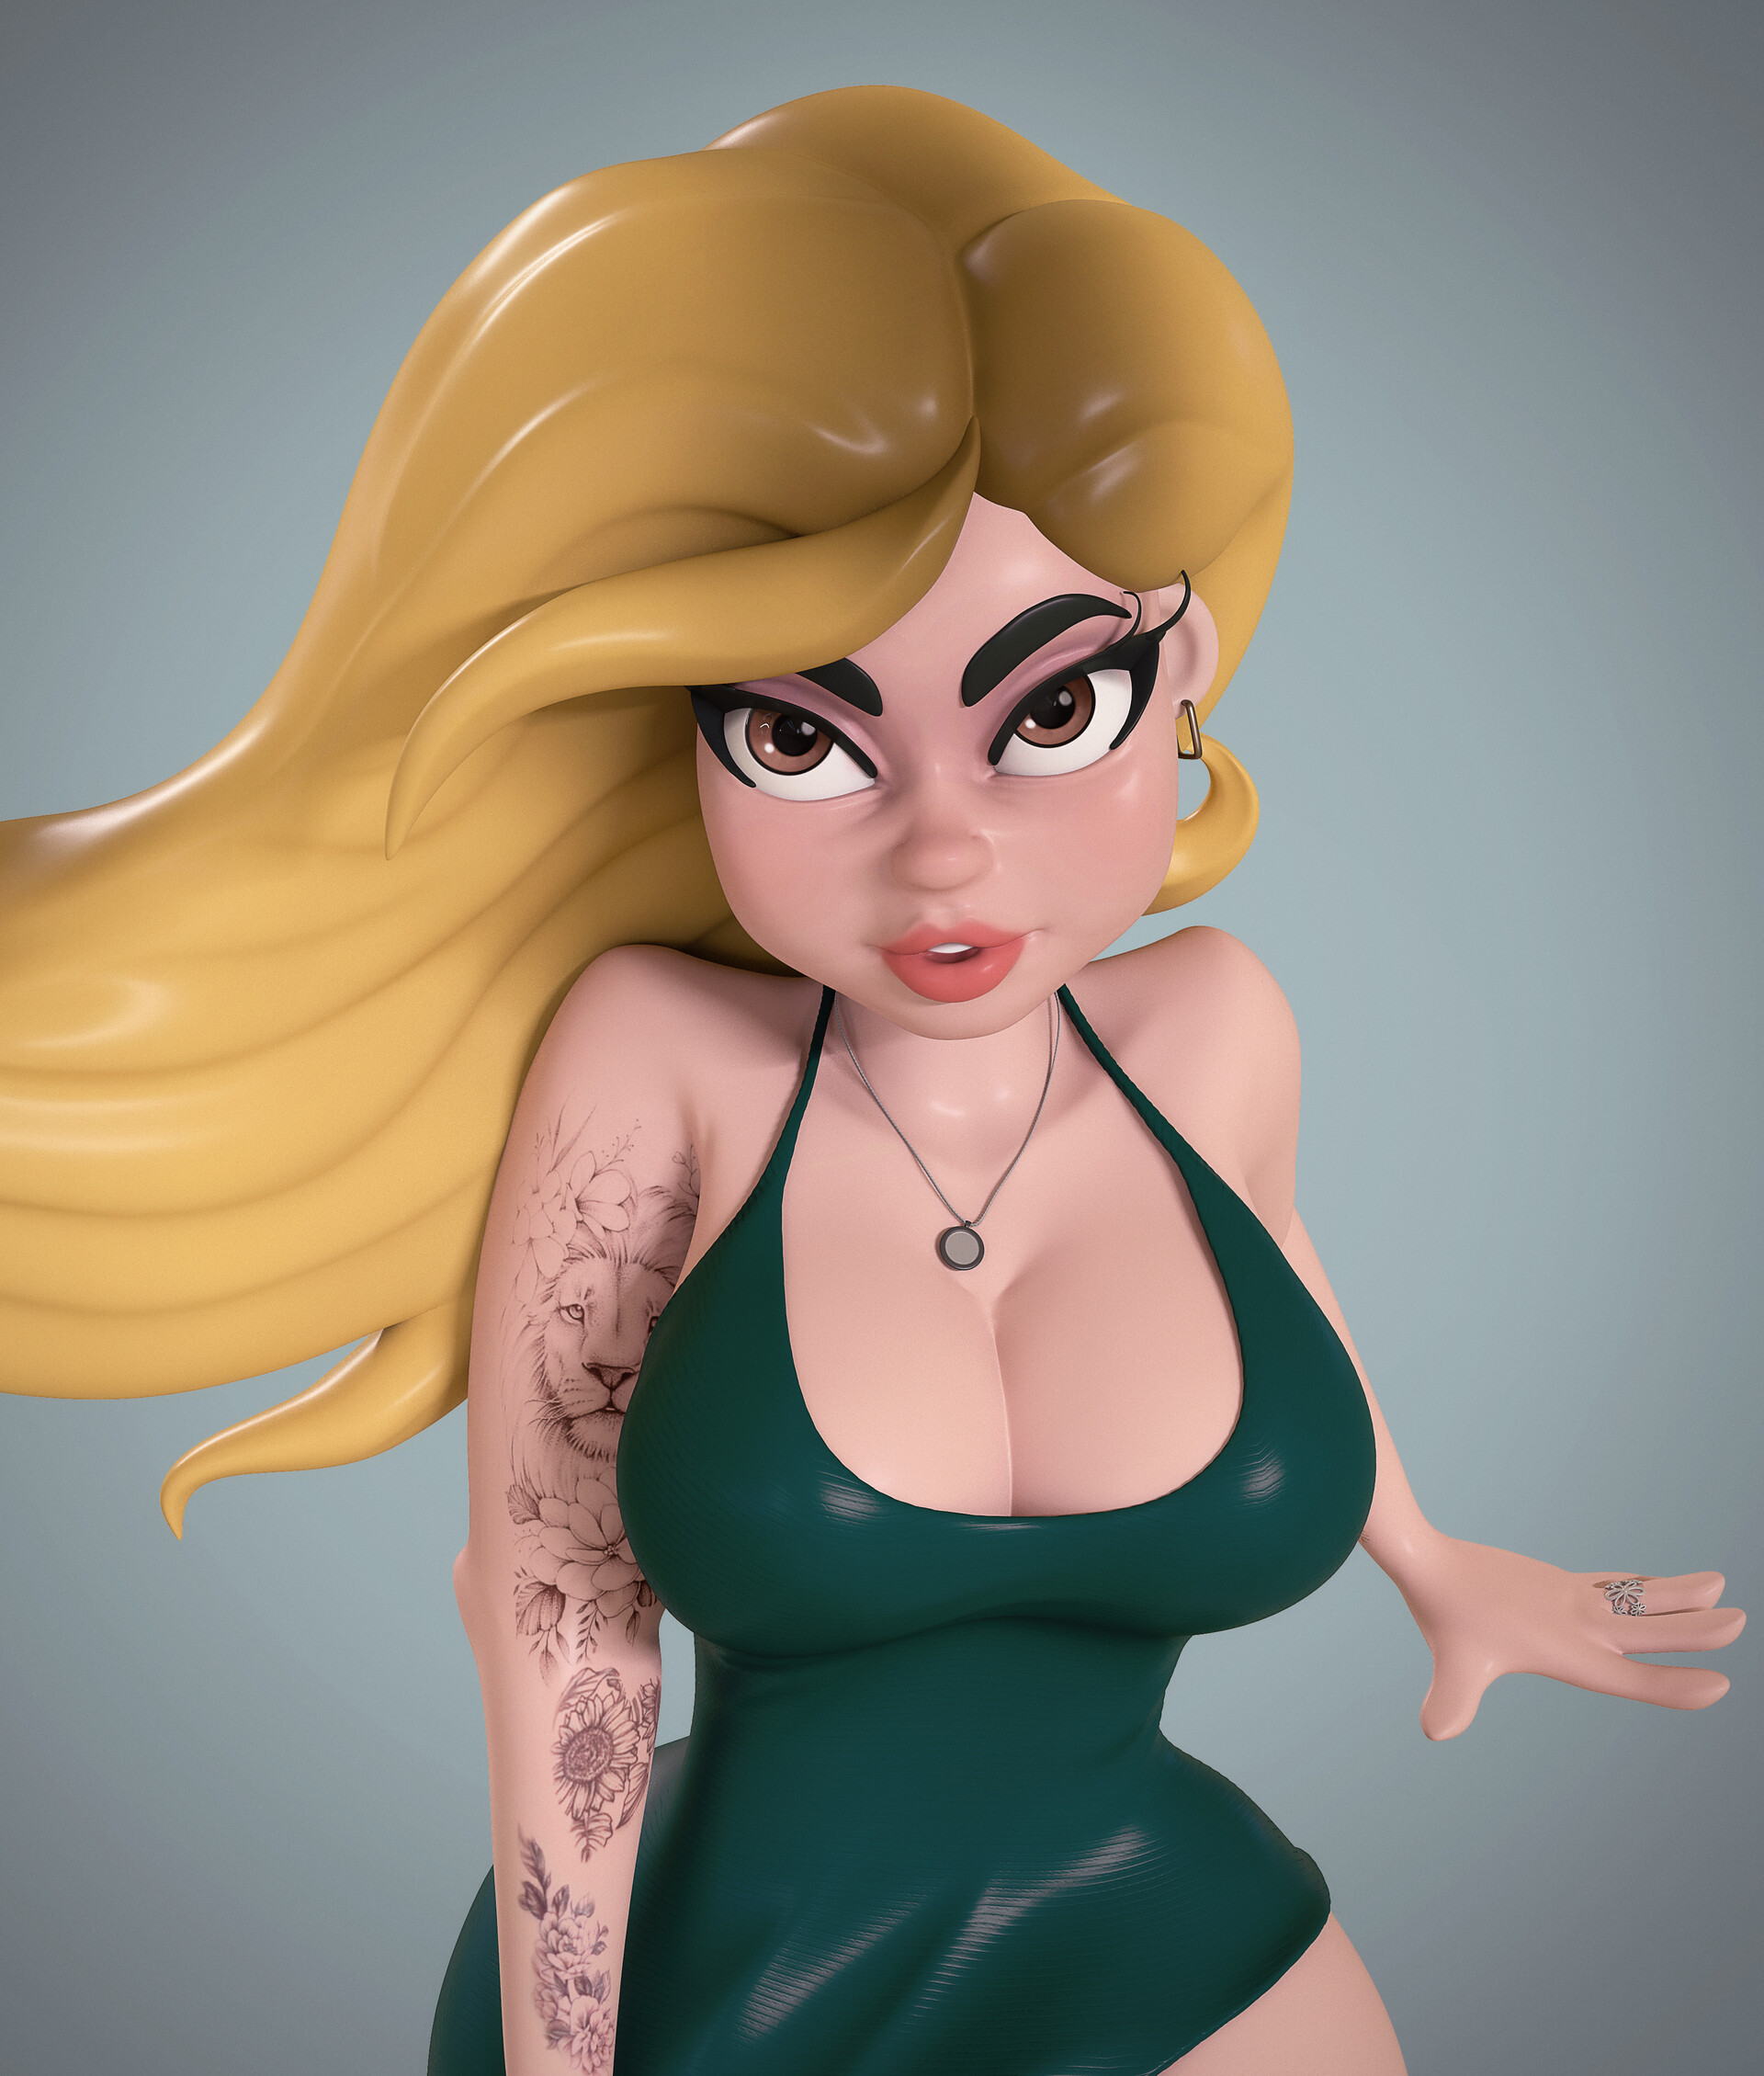 ArtStation - Blonde 3d cartoon sexi